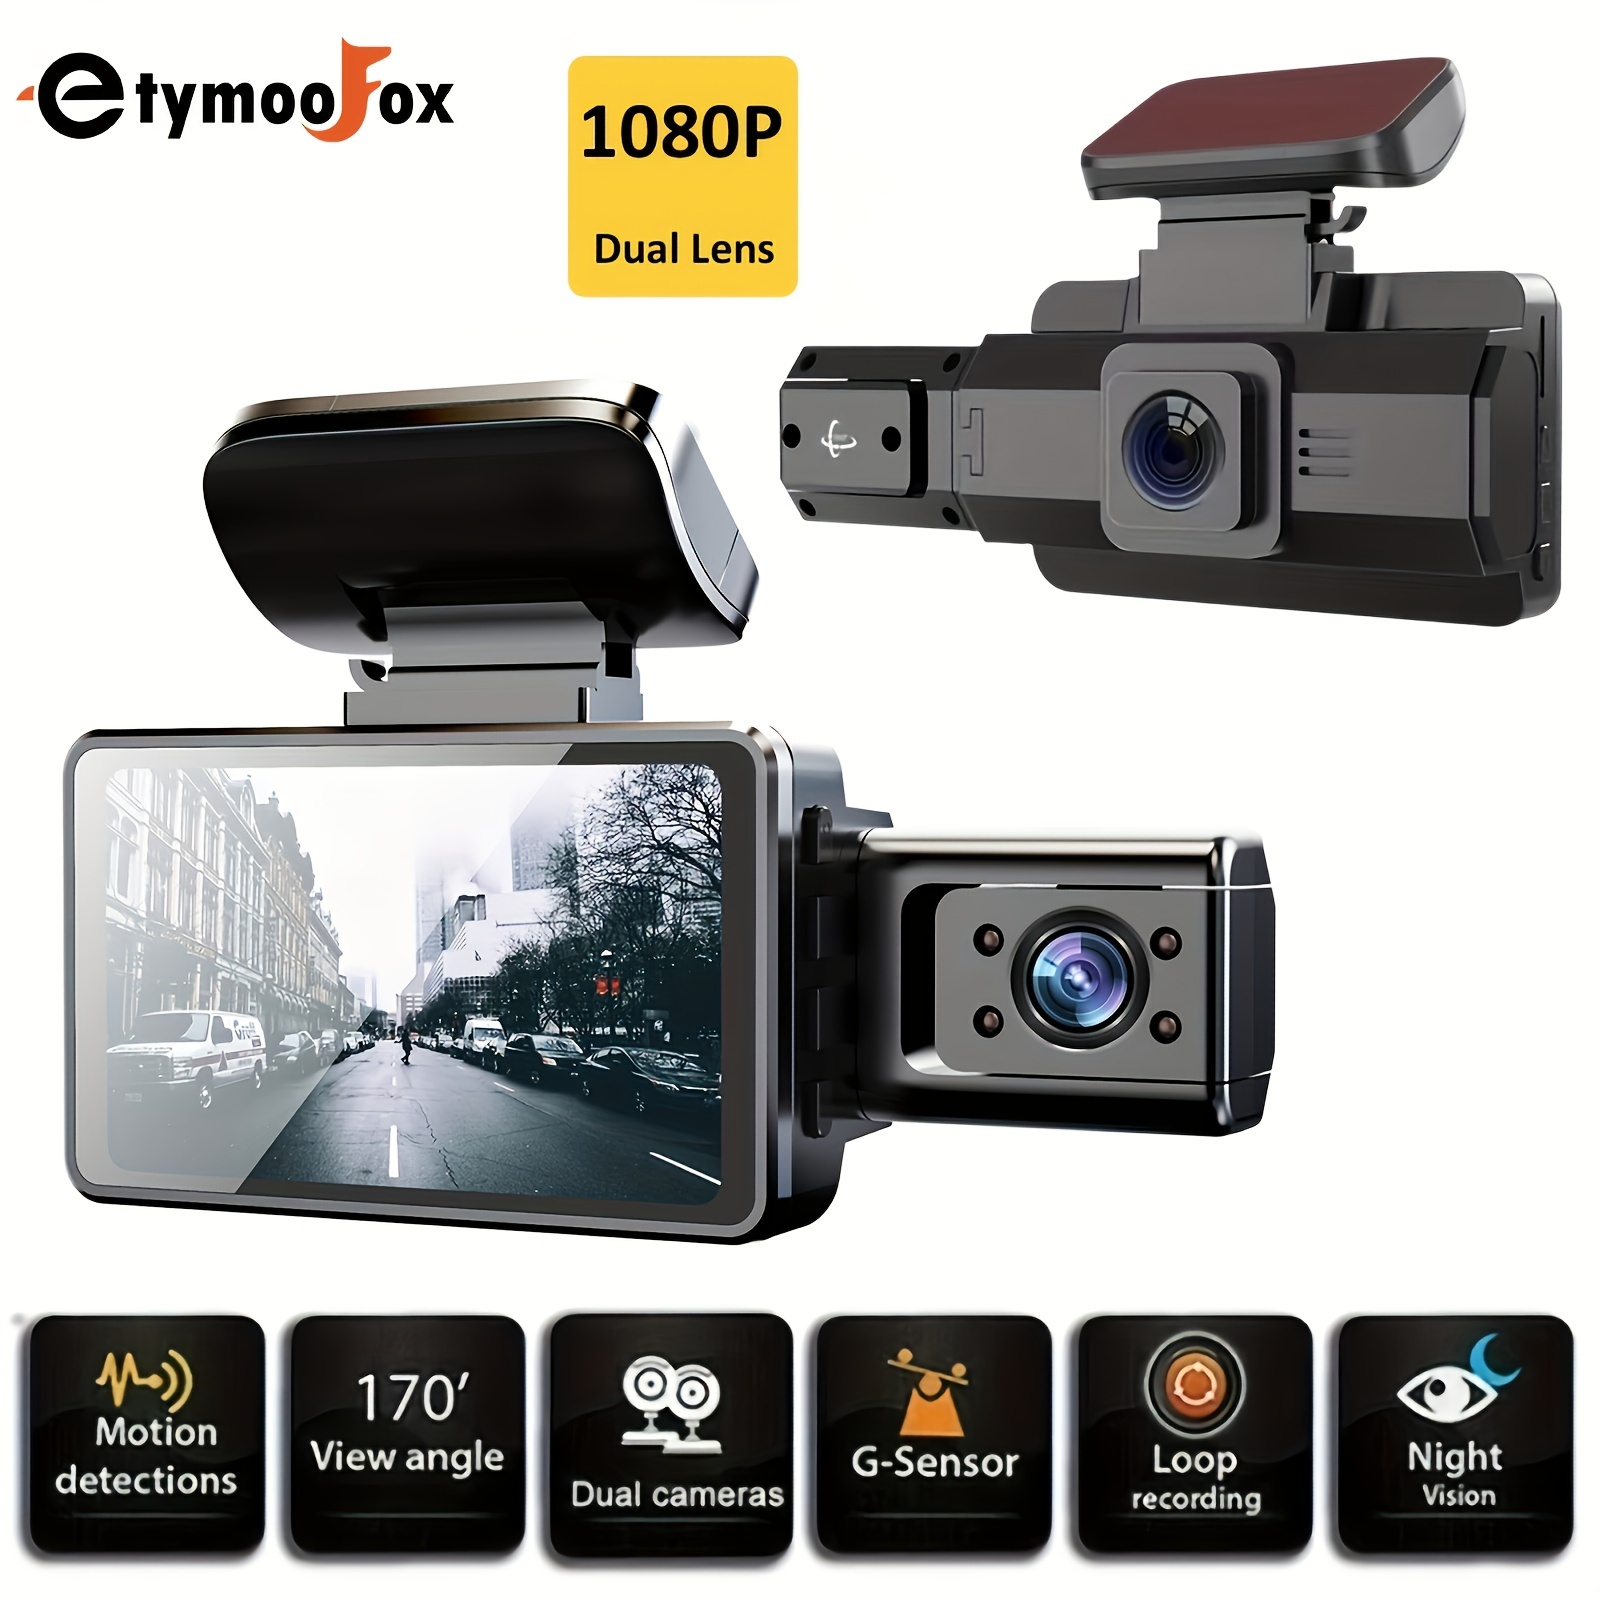 Dashcam Caméra embarquée voiture 1080P vision nocturne et écran 6